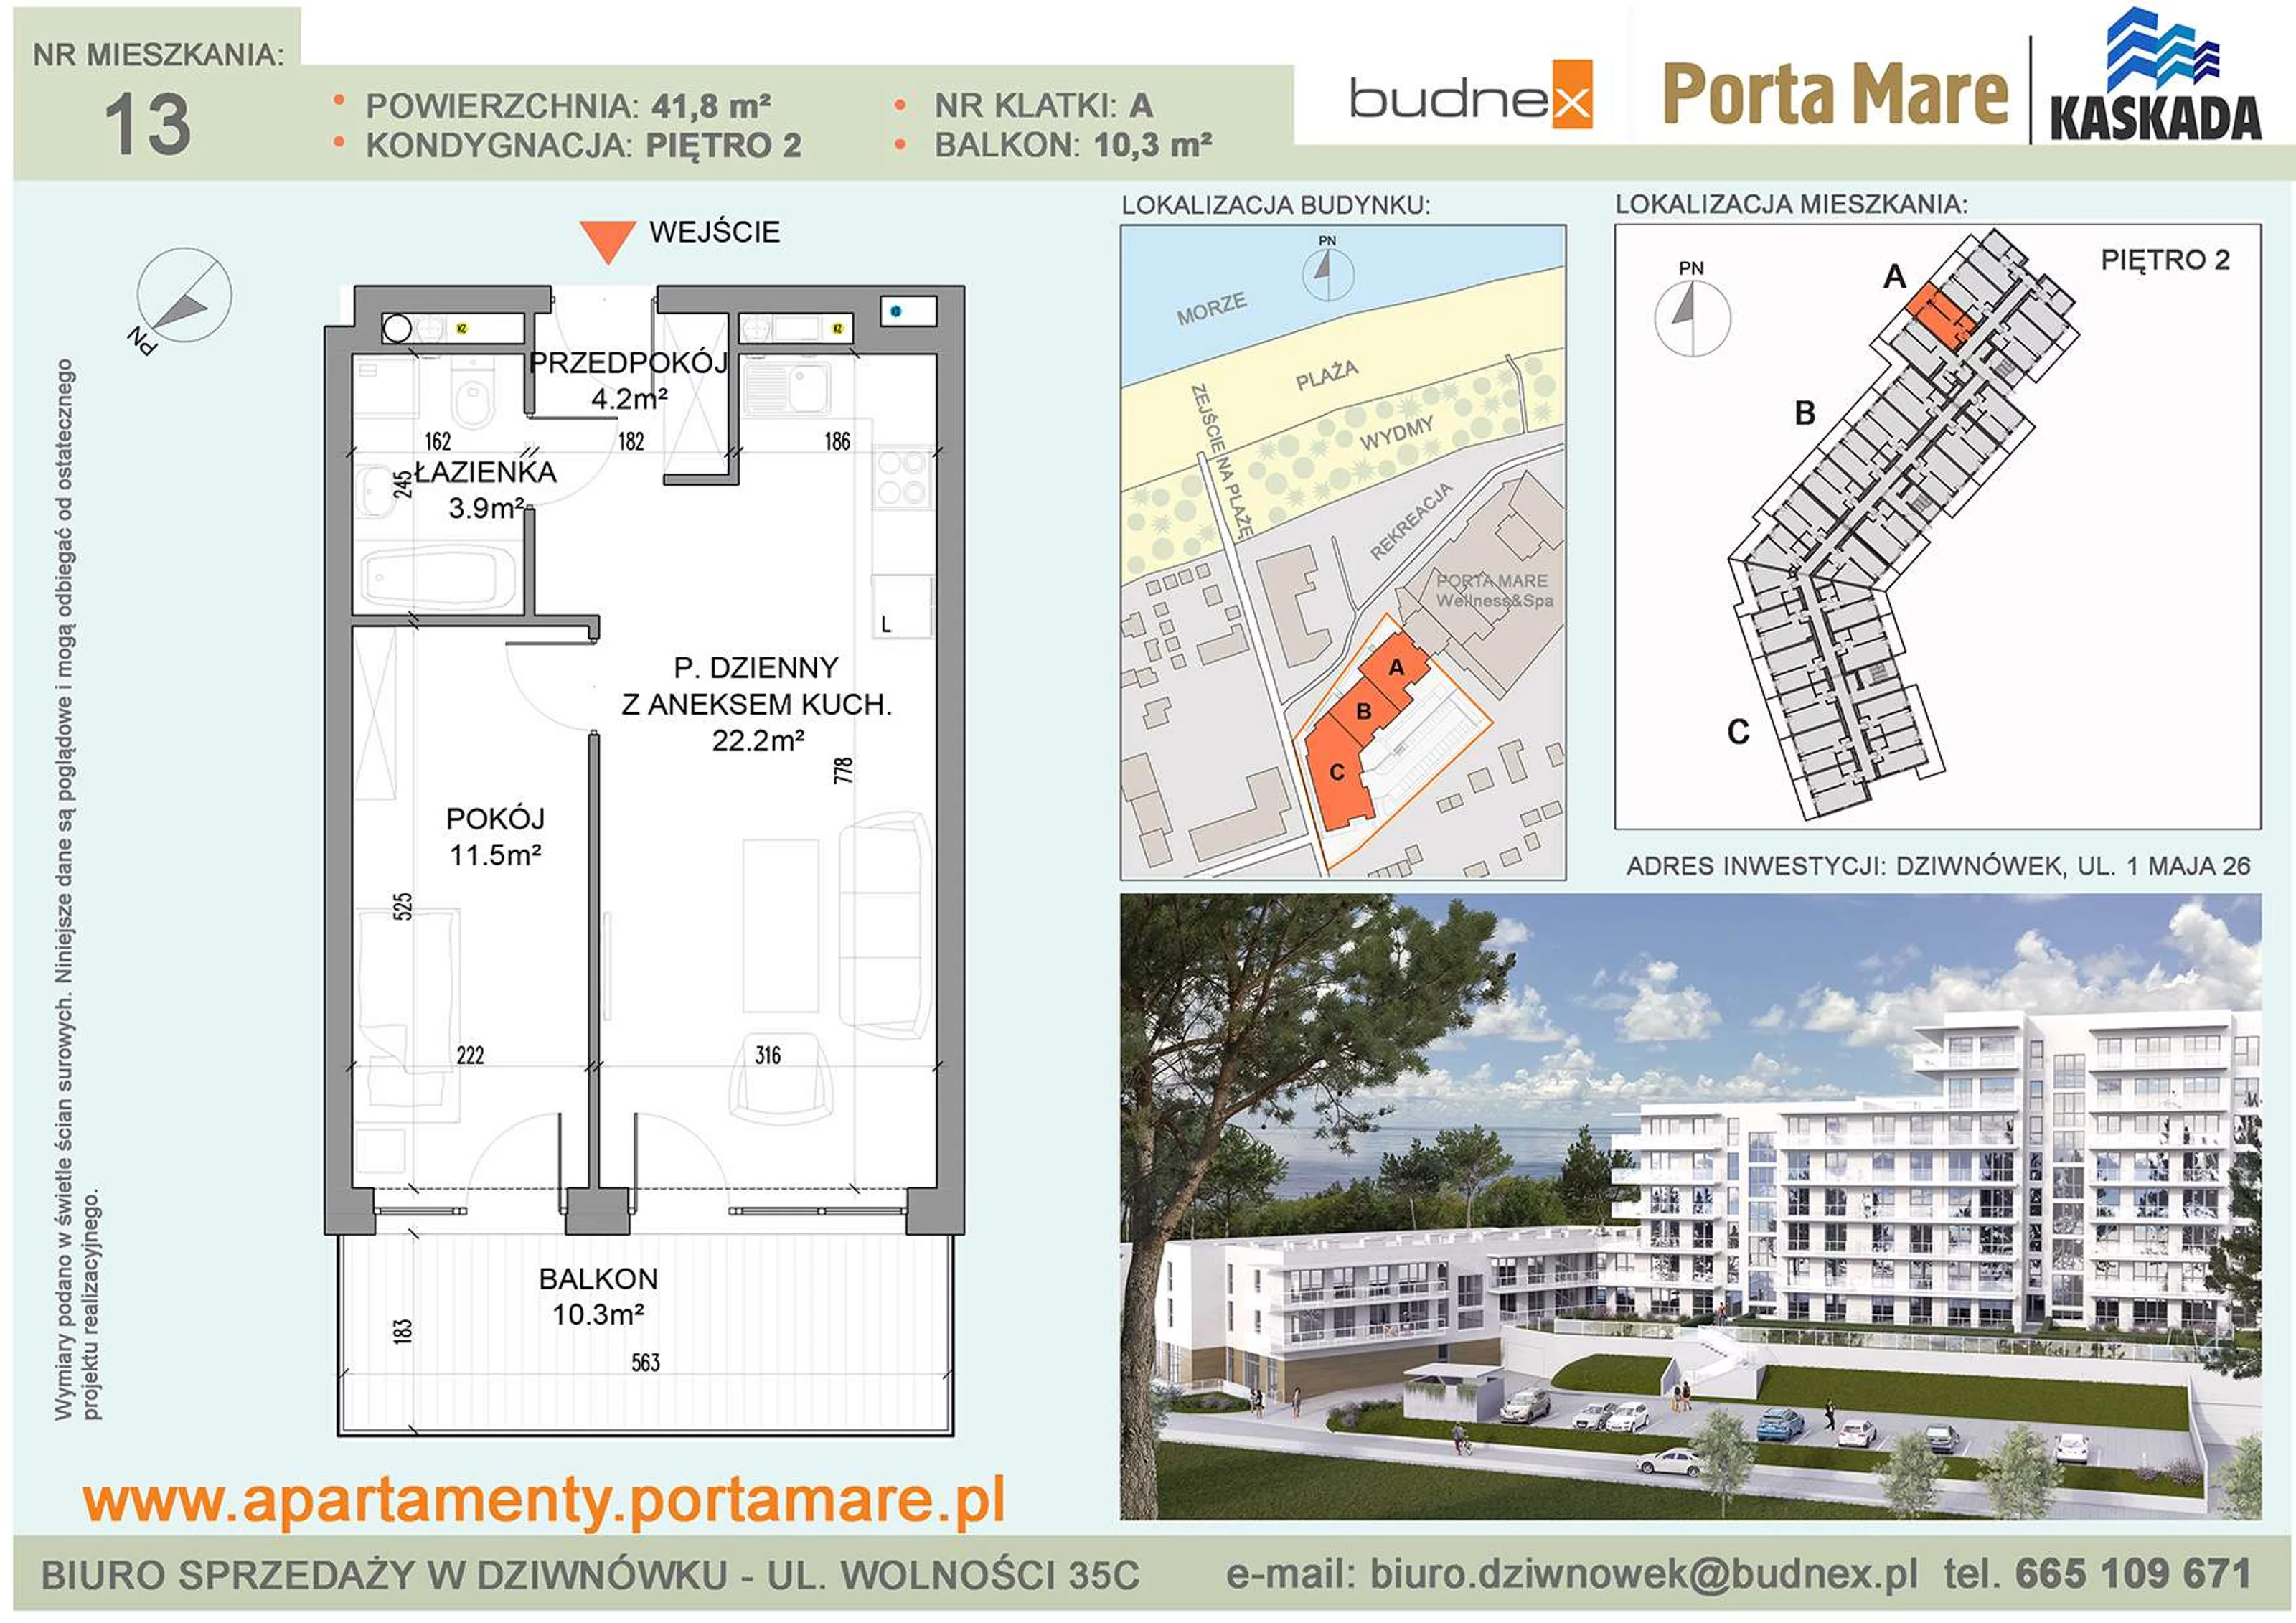 Mieszkanie 41,80 m², piętro 2, oferta nr A/M13, Porta Mare Kaskada, Dziwnówek, ul. 1 Maja 26